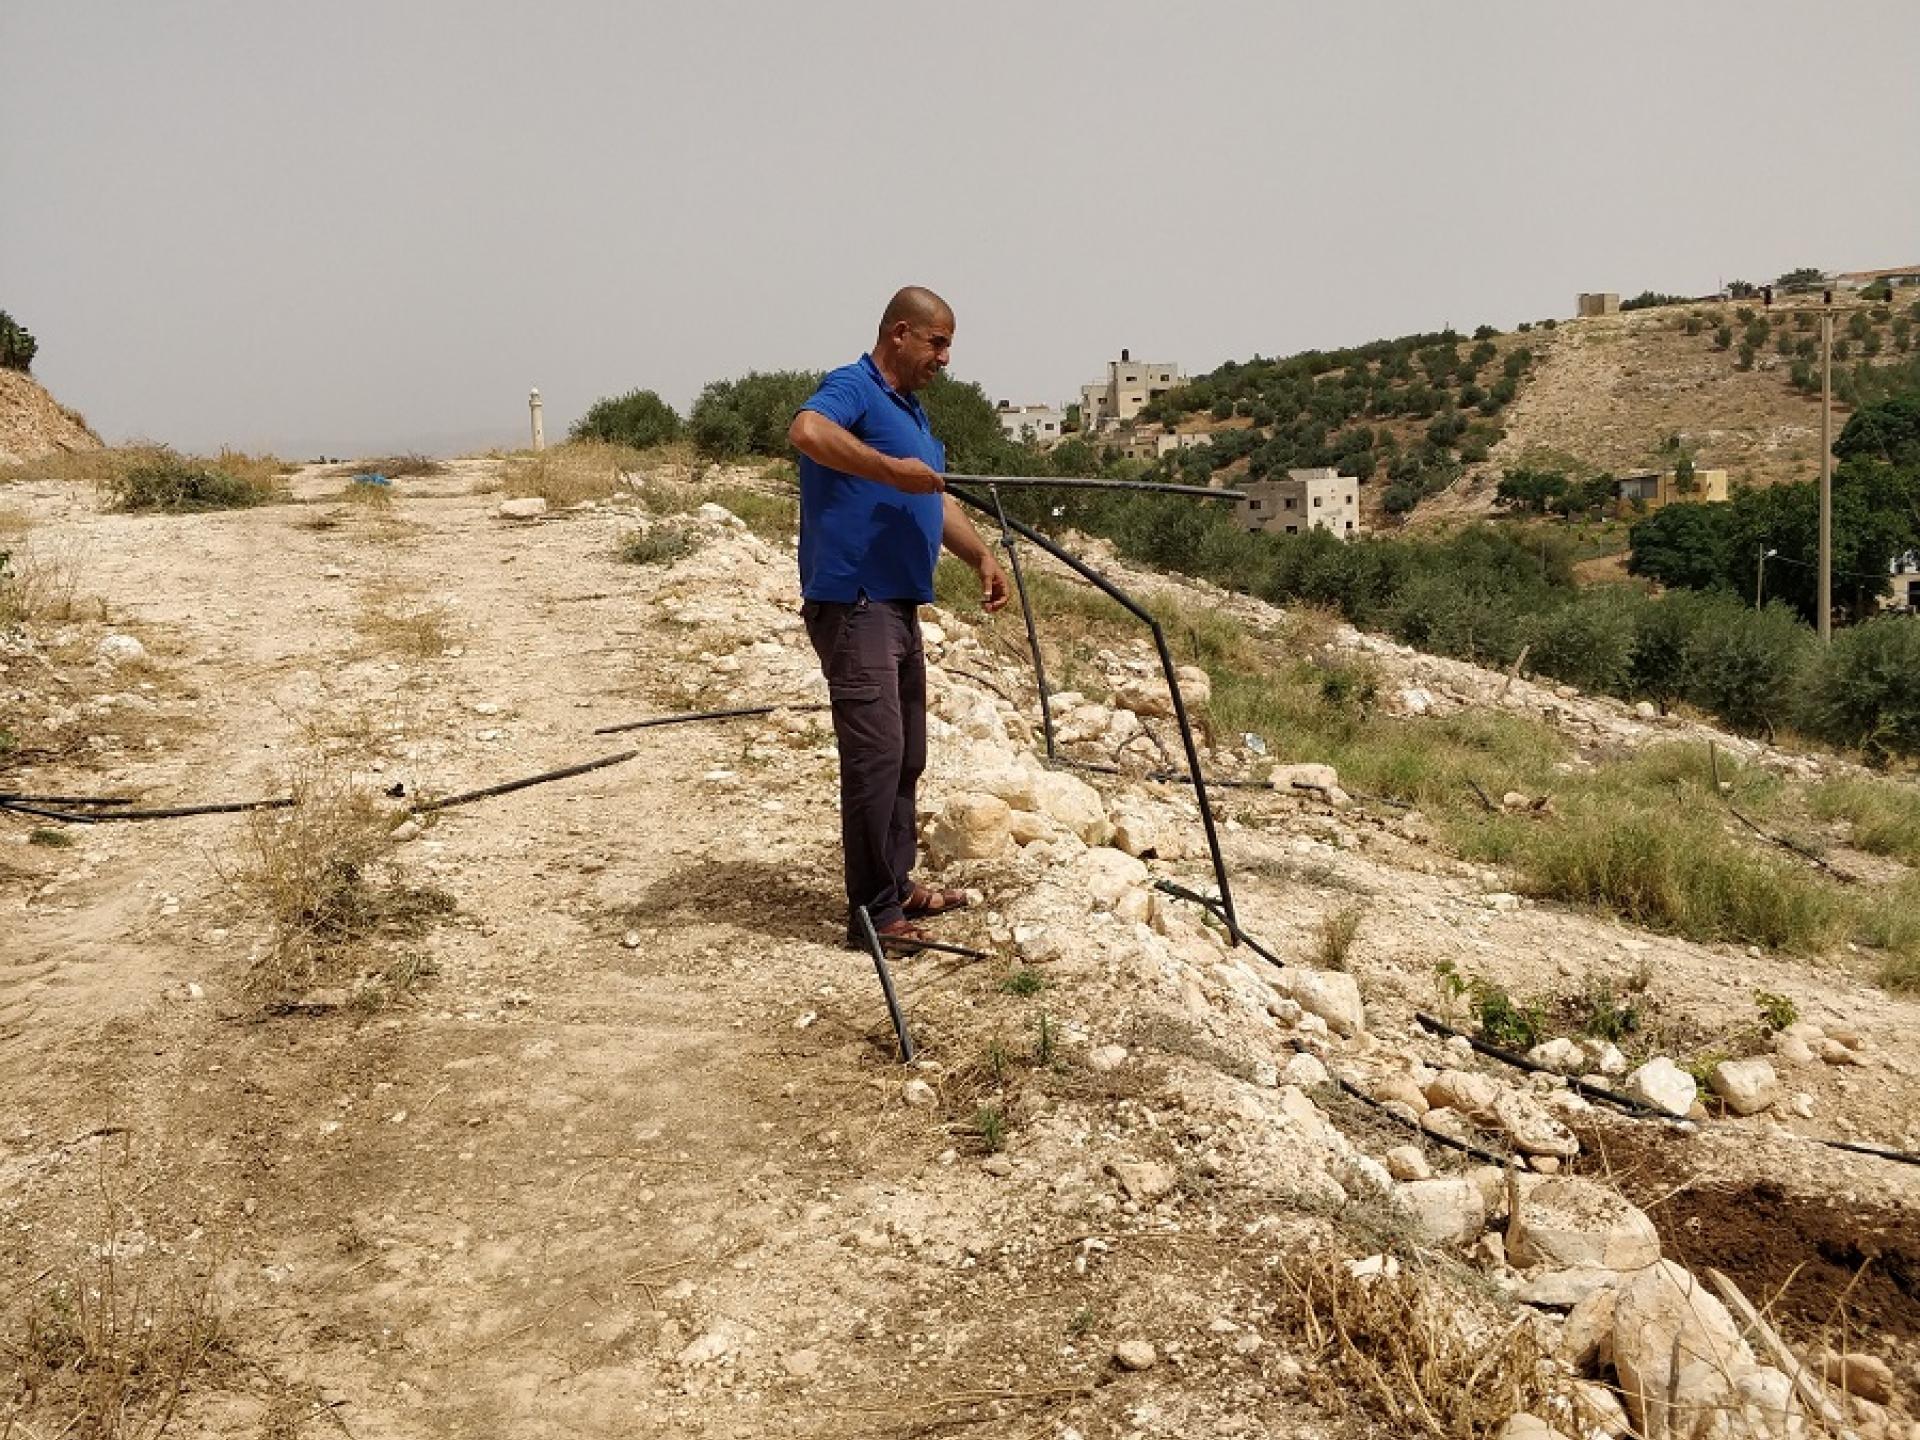 ברדלה, צפון בקעת הירדן: 400 עצי זית צעירים נכרתו בידי חיילי צה"ל. צינורות השקייה נחתכו, למה?